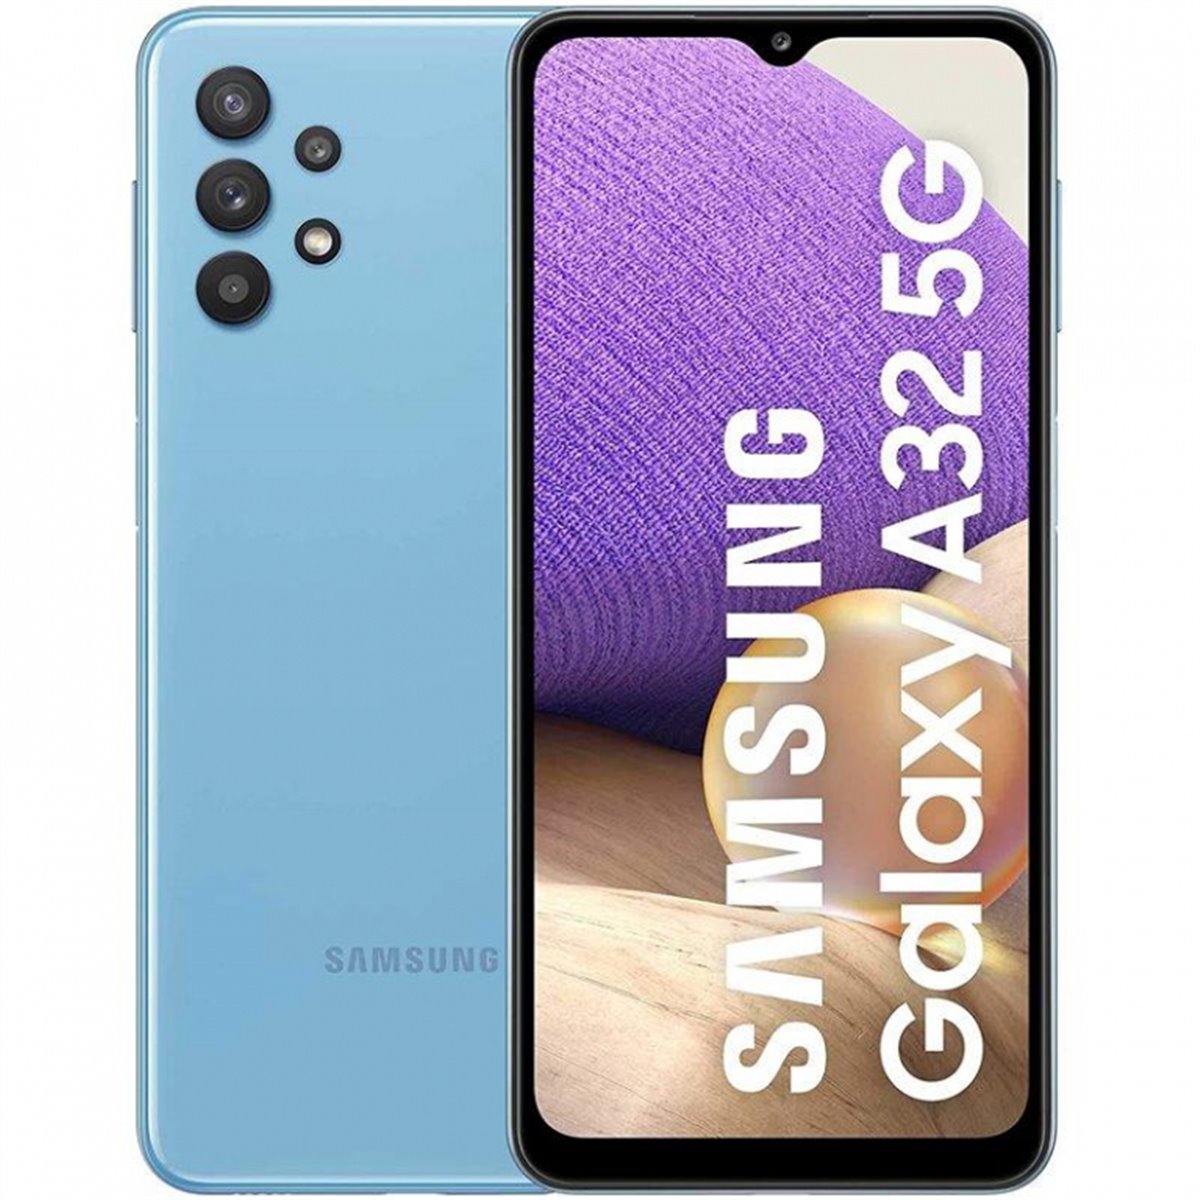 Samsung Galaxy A32 A326 5G Dual Sim 4GB RAM 128GB Blue EU